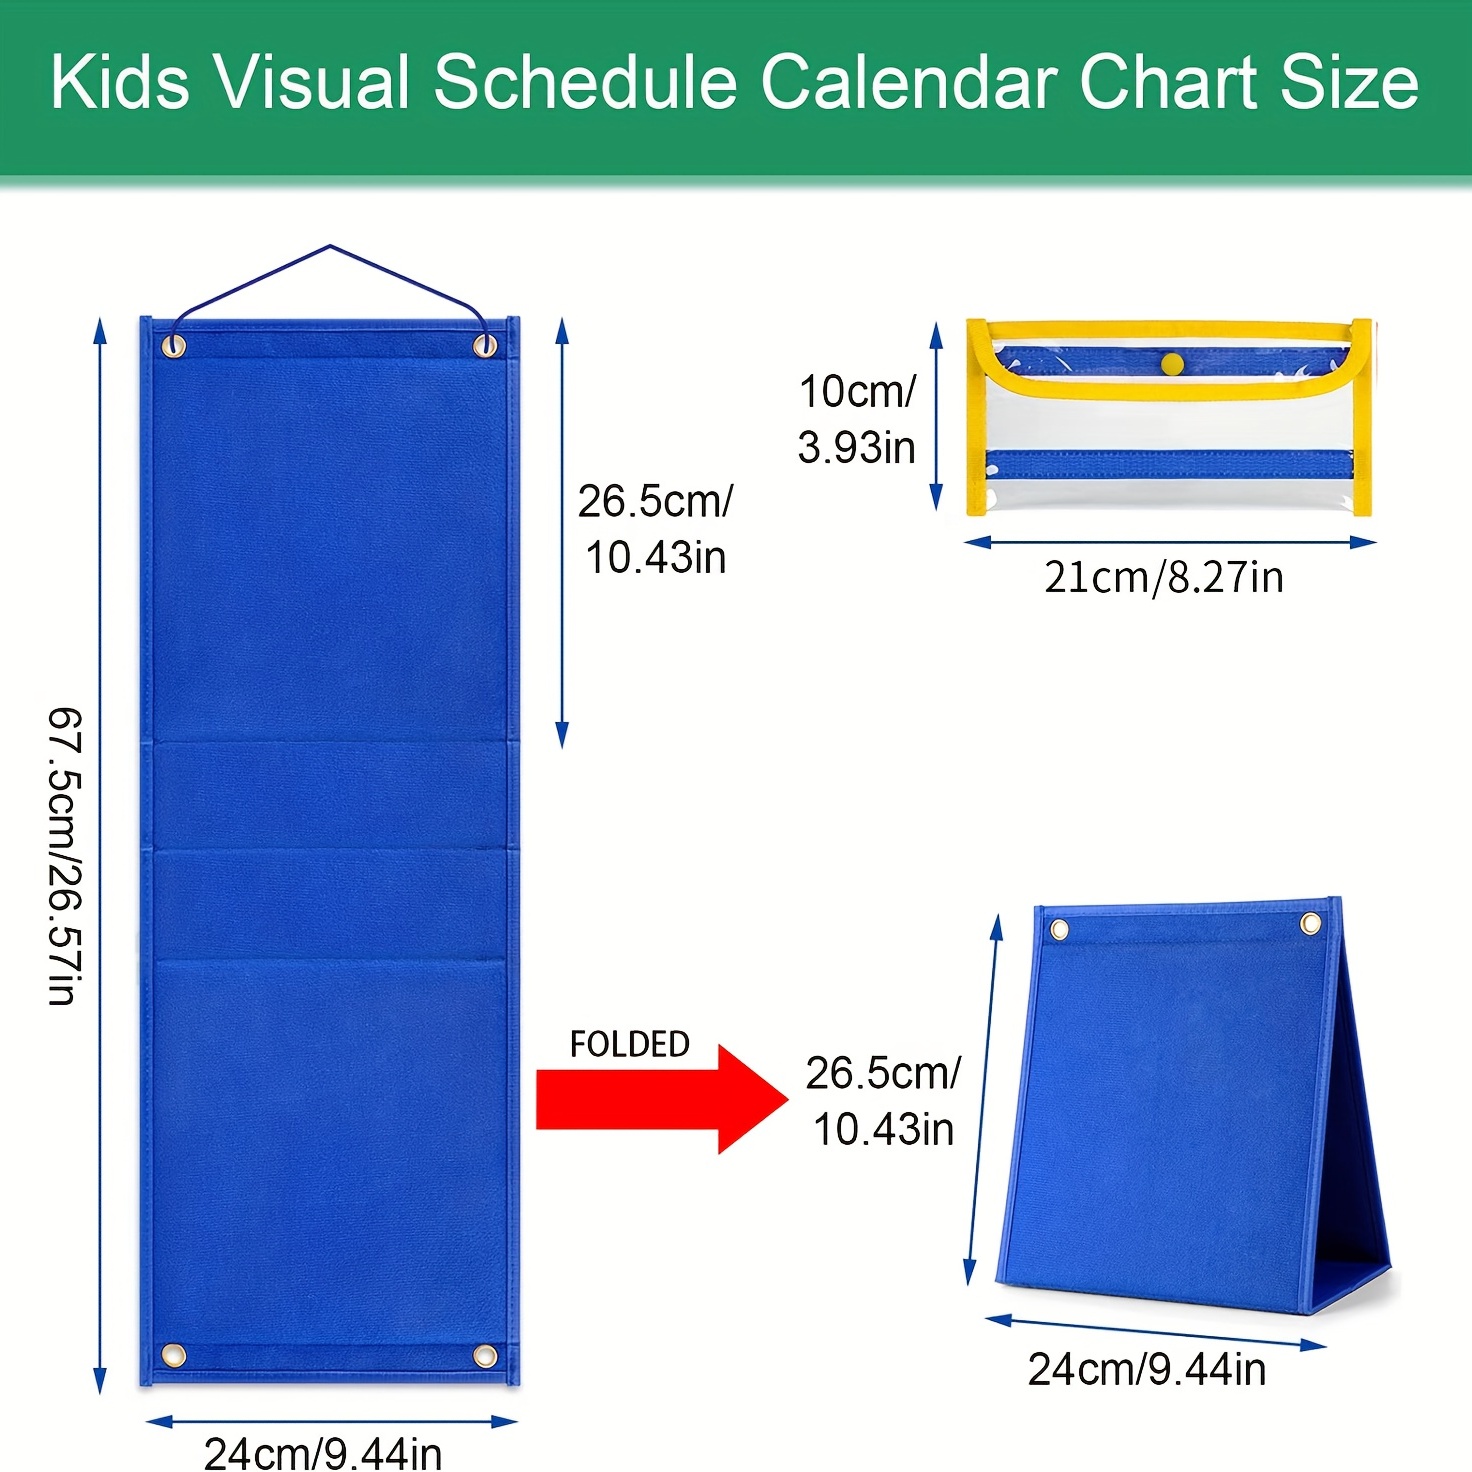 Tableau du calendrier visuel des enfants, tableau de routine de la